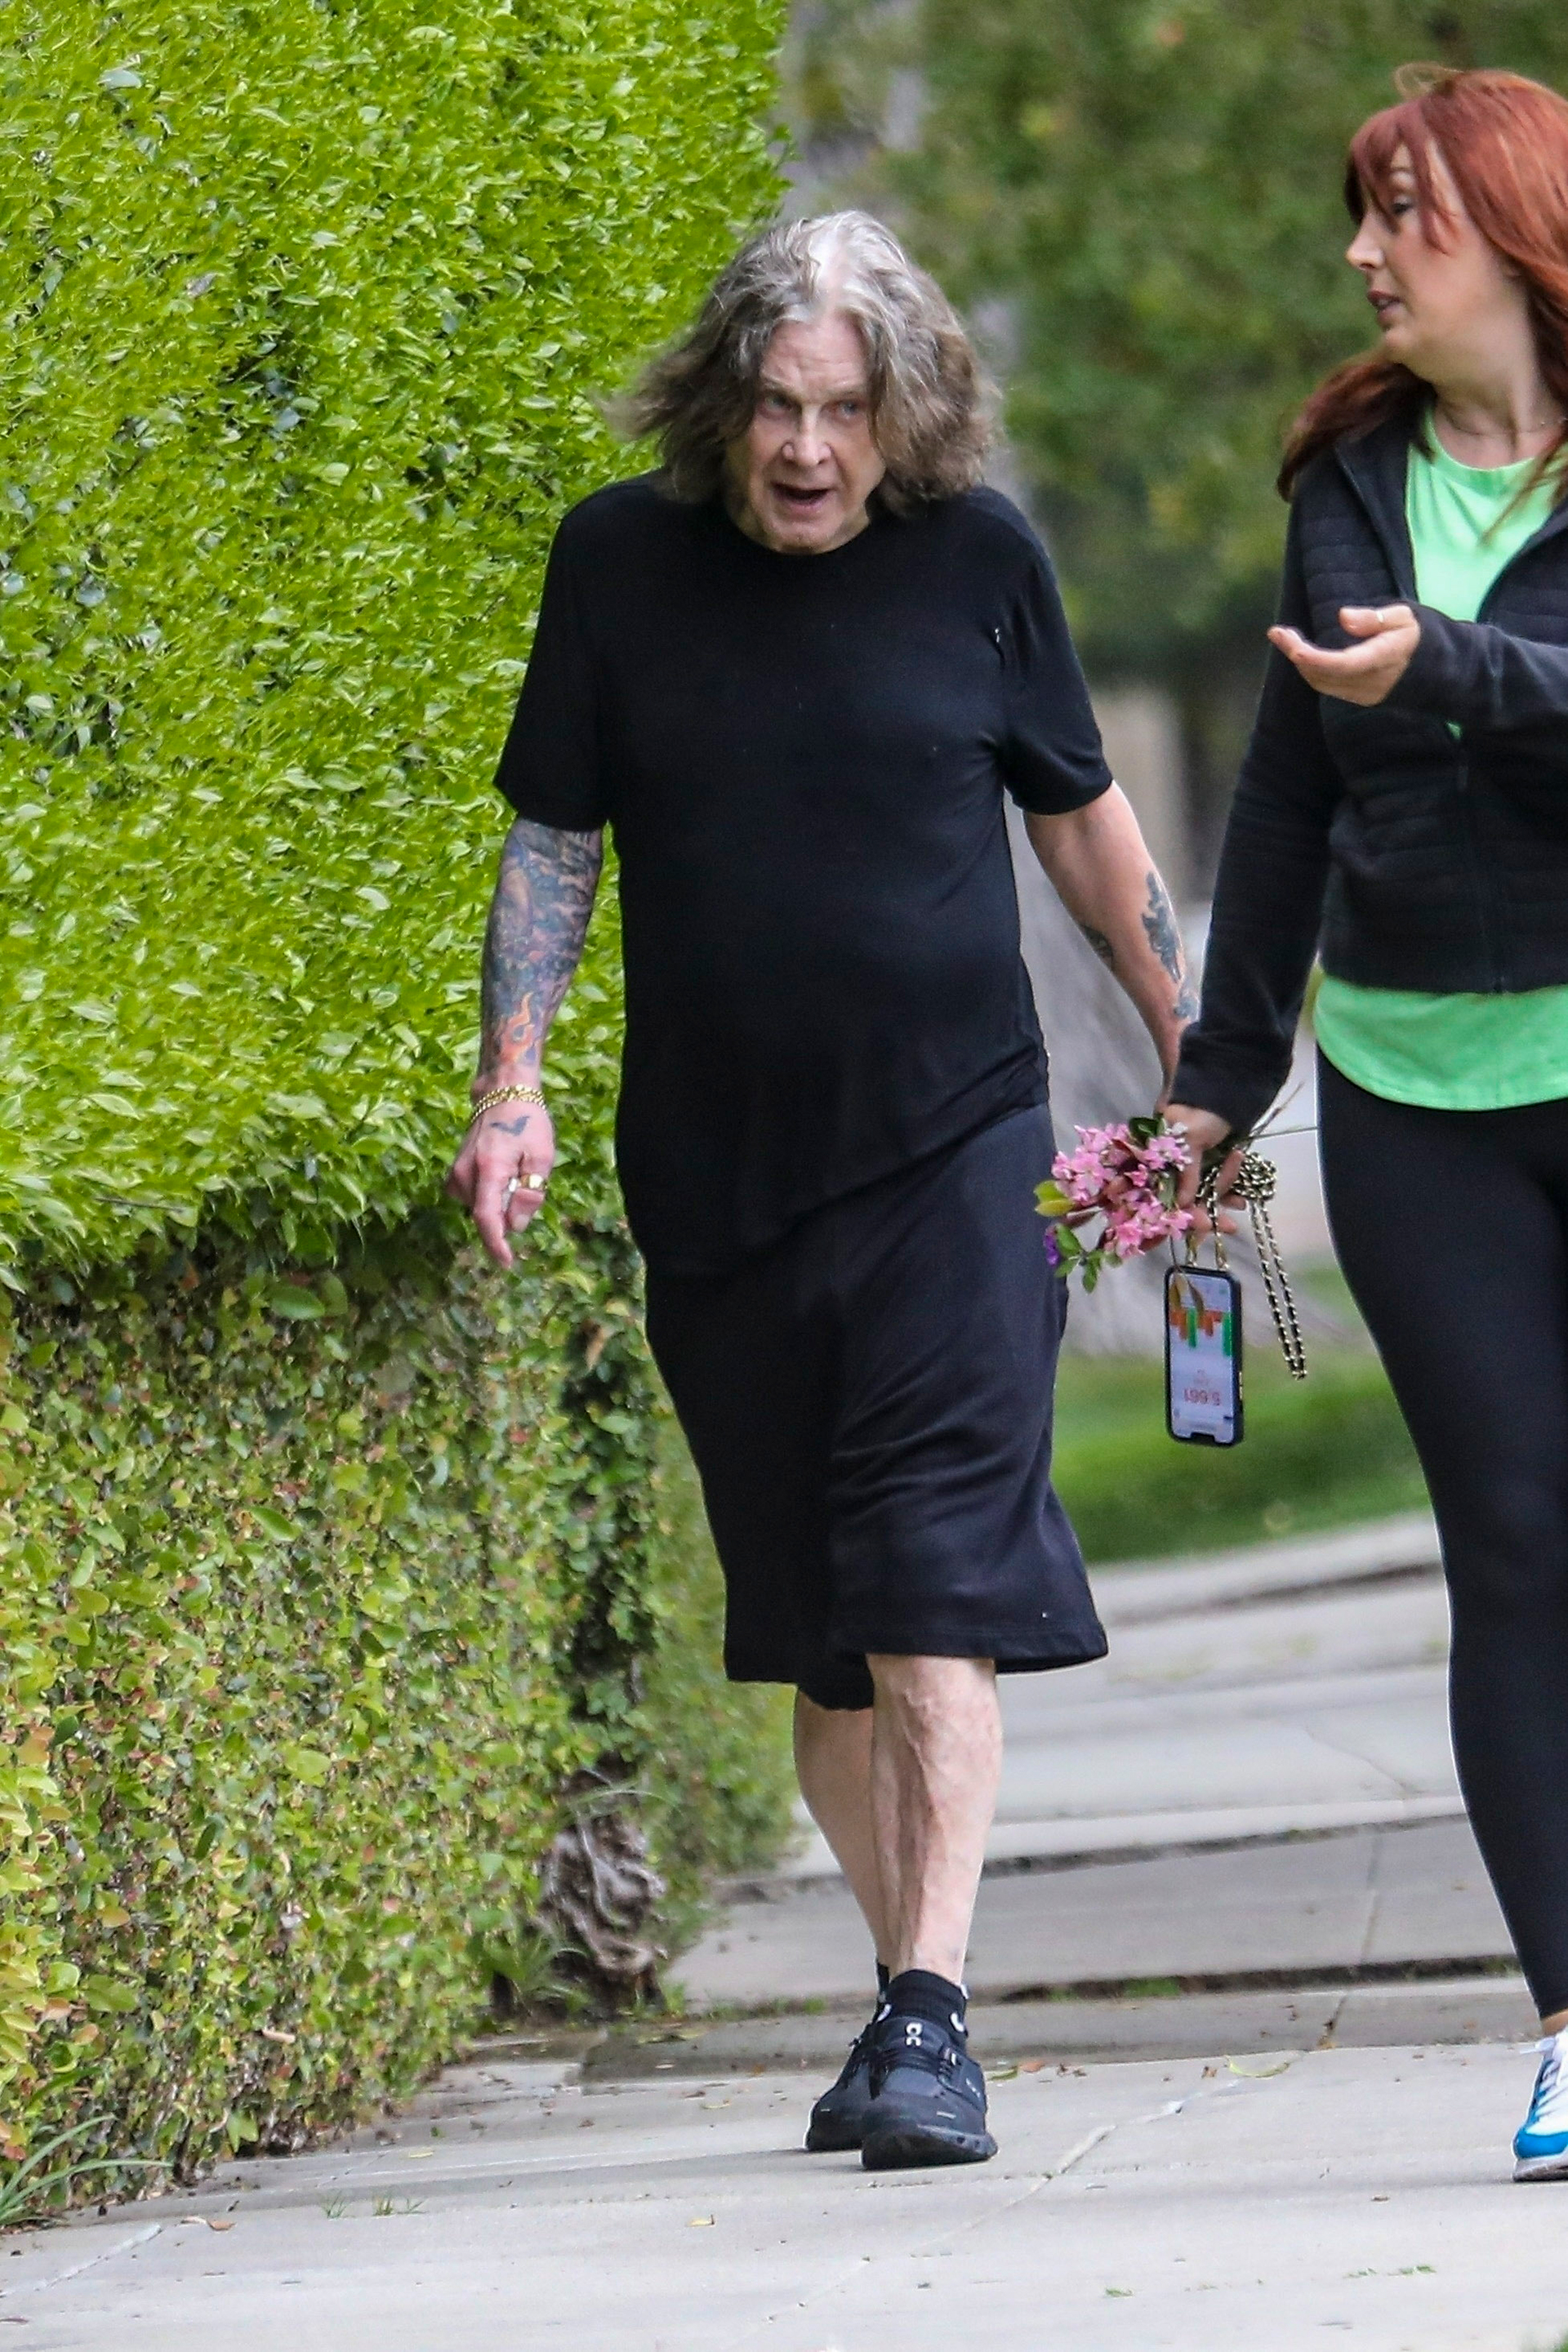 Las fotos de Ozzy Osbourne paseando sin su bastón en medio de su lucha  contra el Parkinson - Infobae